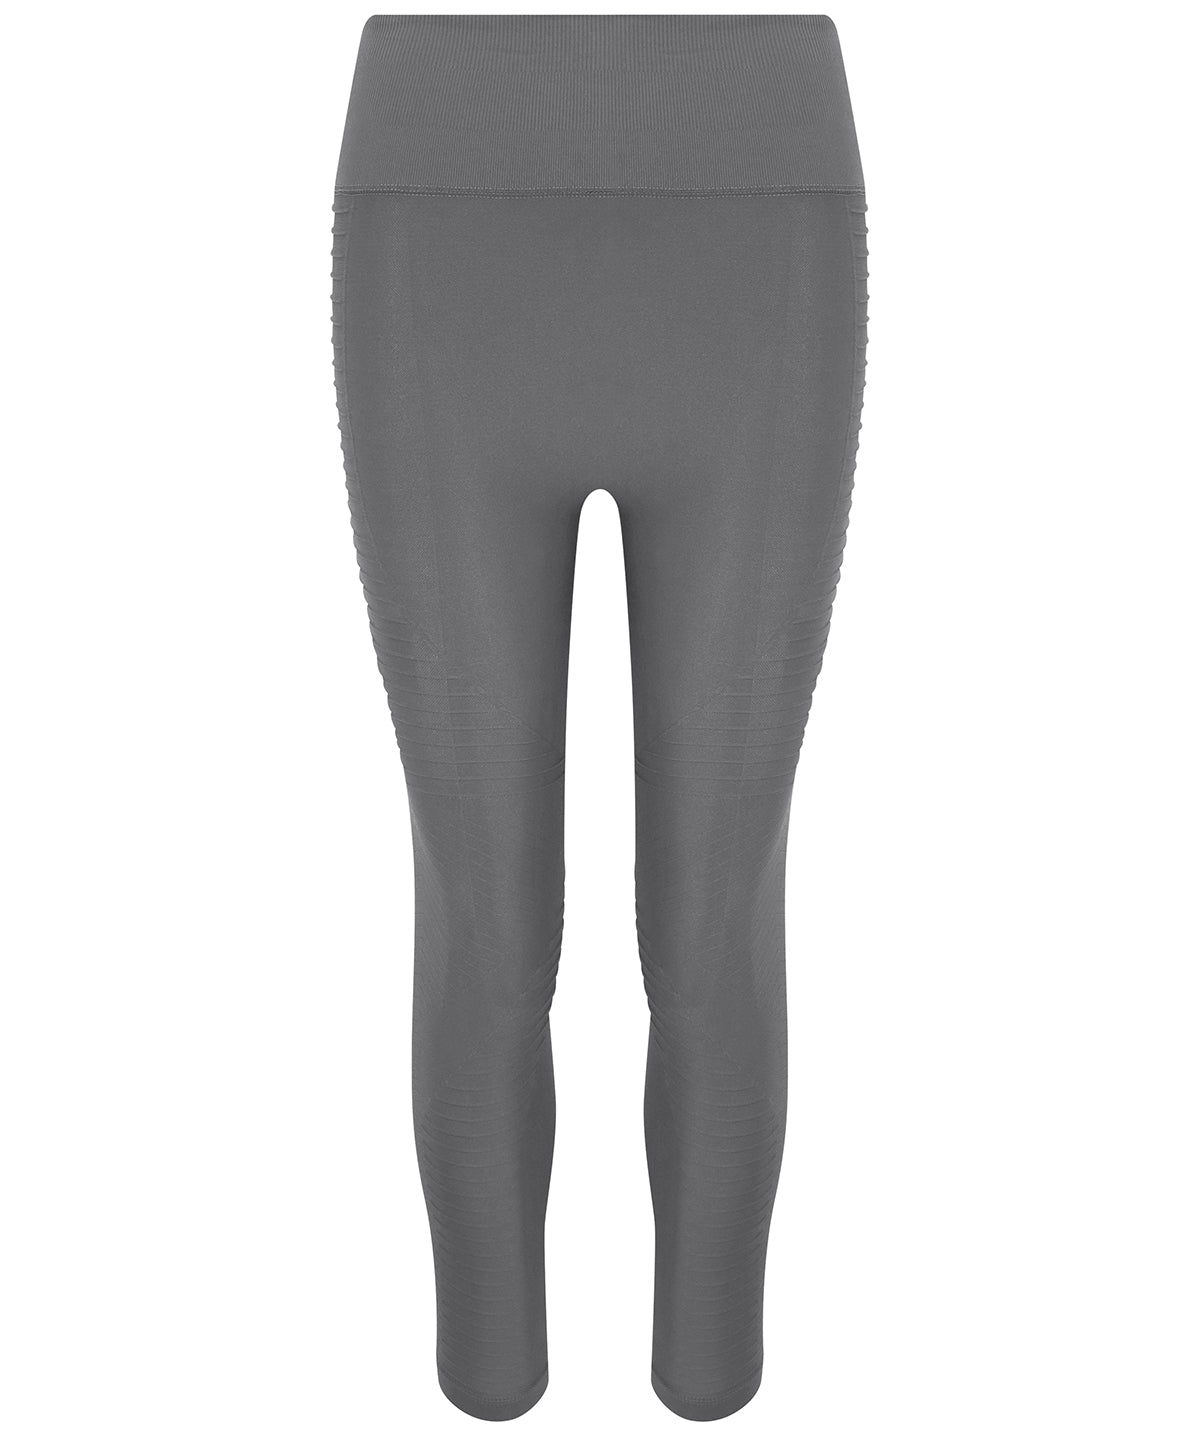 Personalised Leggings - Black AWDis Just Cool Women's cool seamless leggings